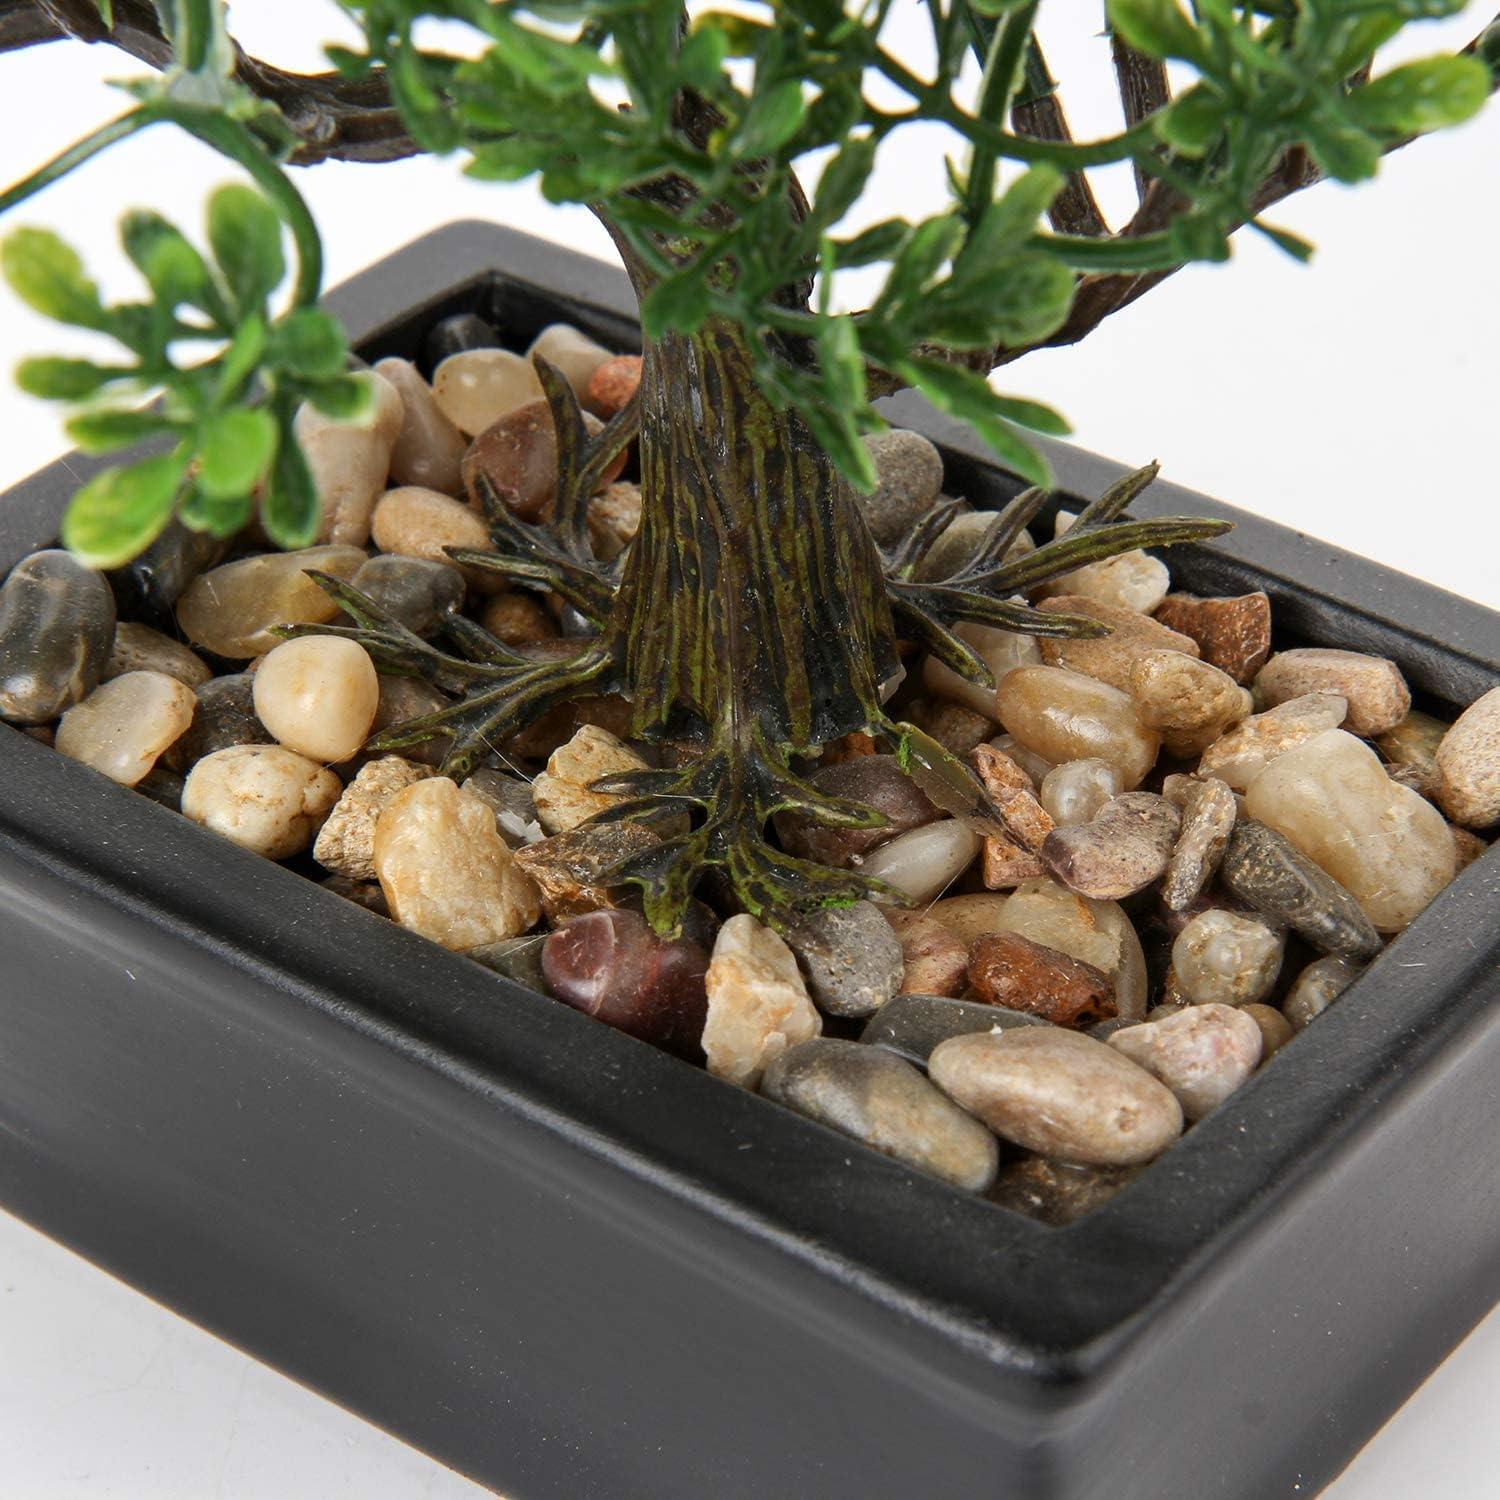 Comprar bonsai artificial en la tienda online de artplants